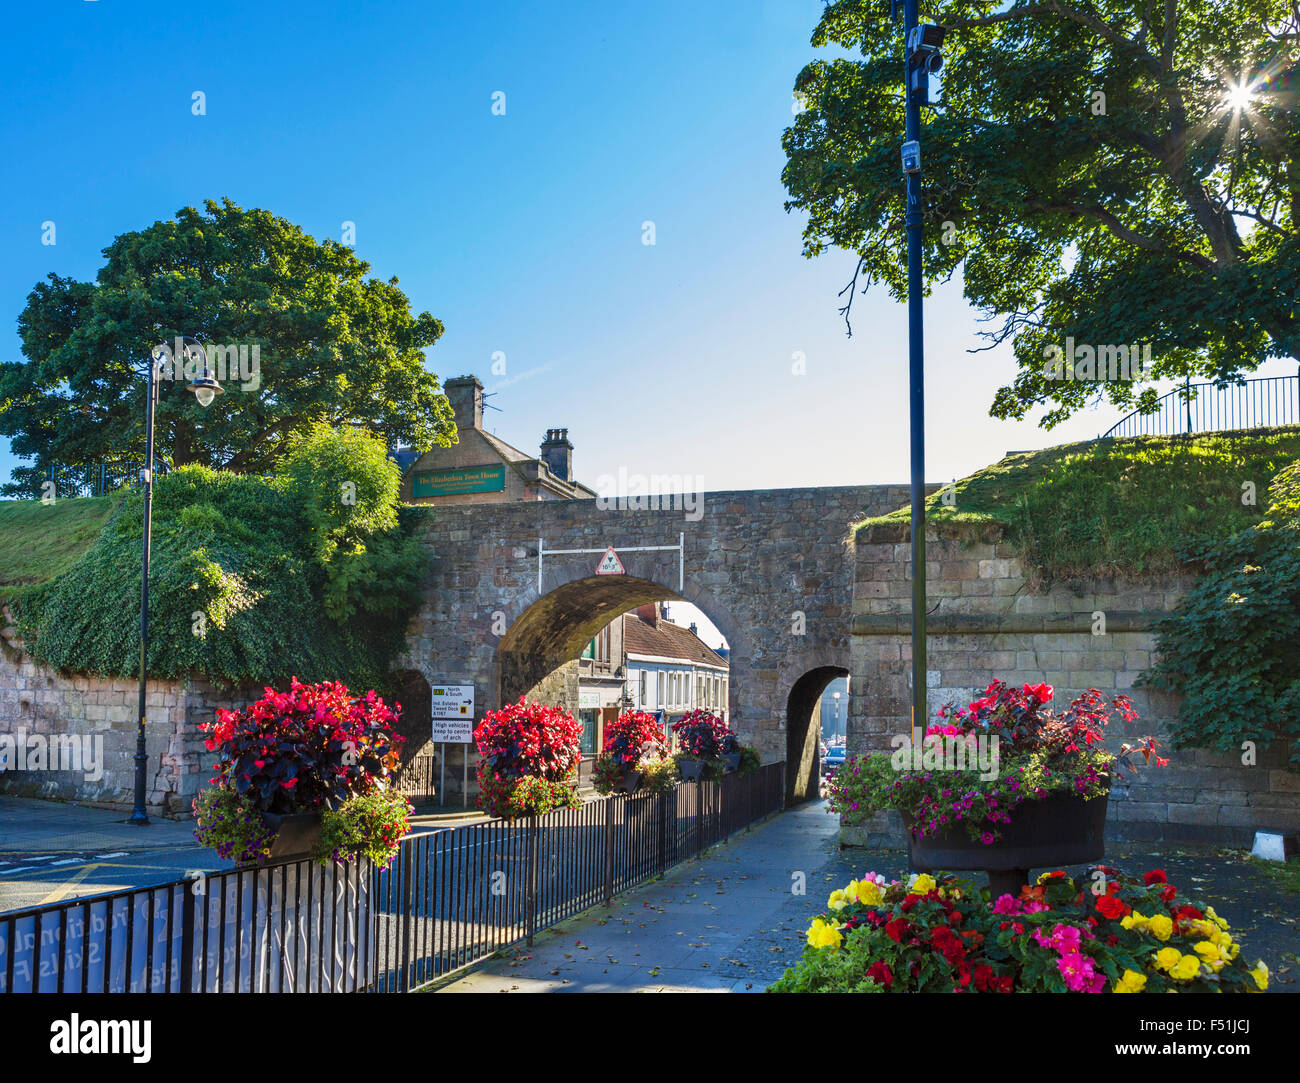 Scots porte dans la vieille ville fortifiée, Berwick-upon-Tweed, Northumberland, England, UK Banque D'Images